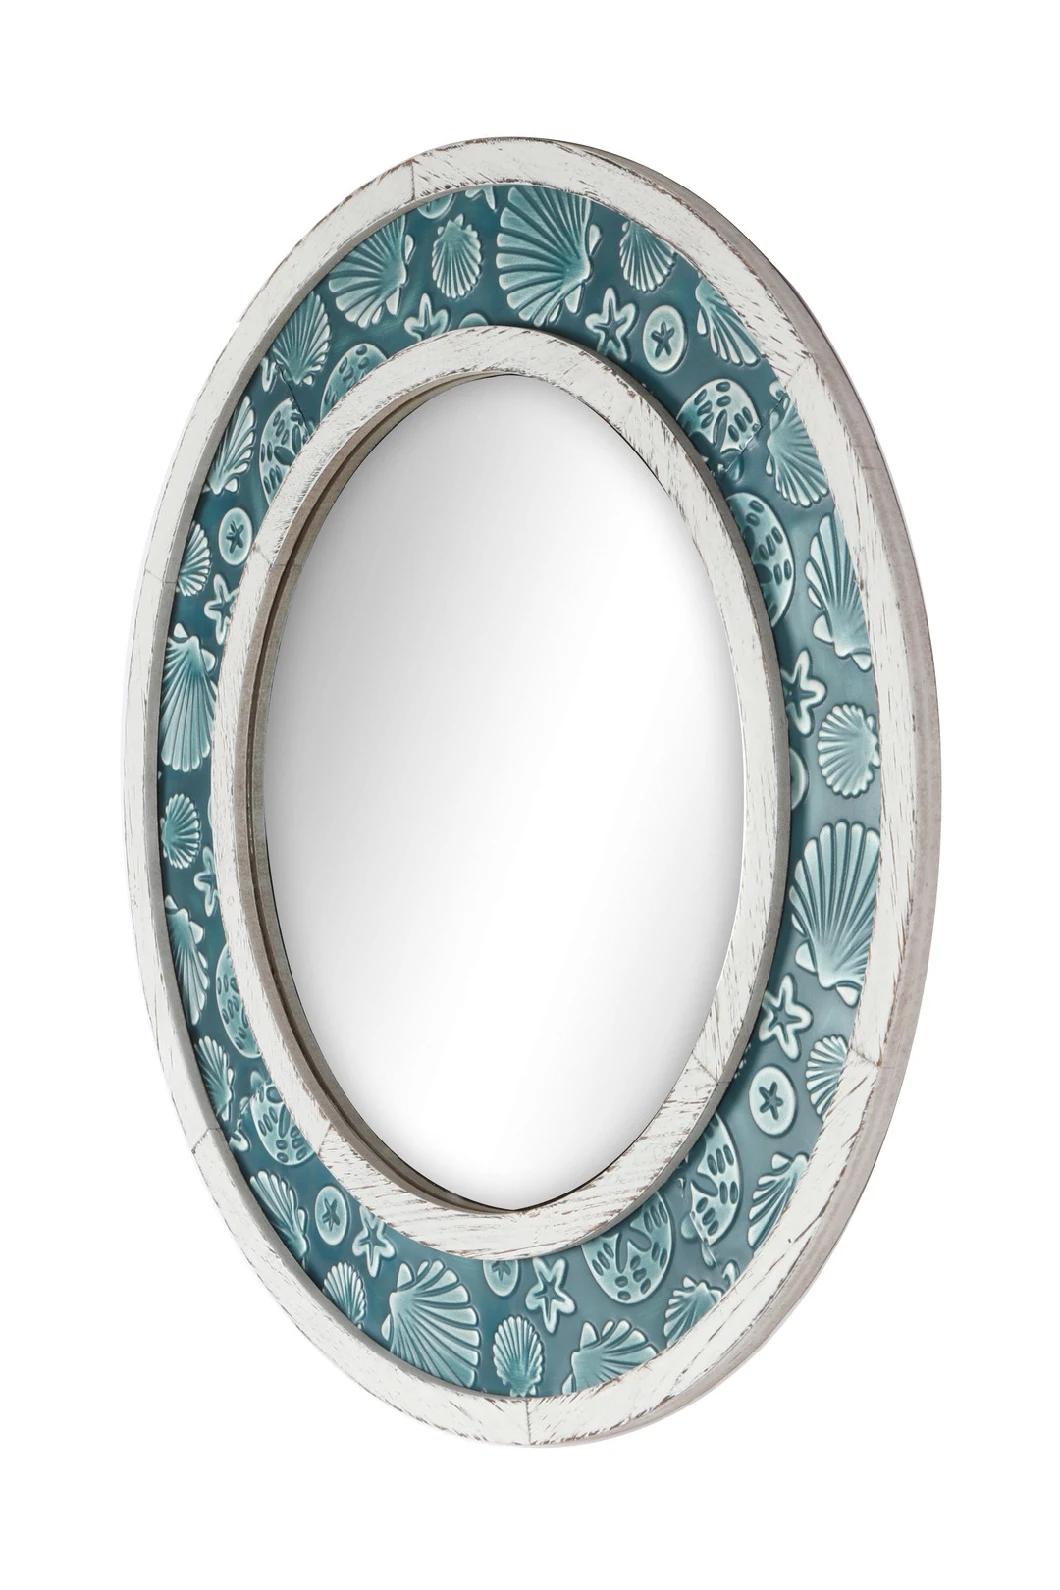 Antique Round Wall Decorative Mirror